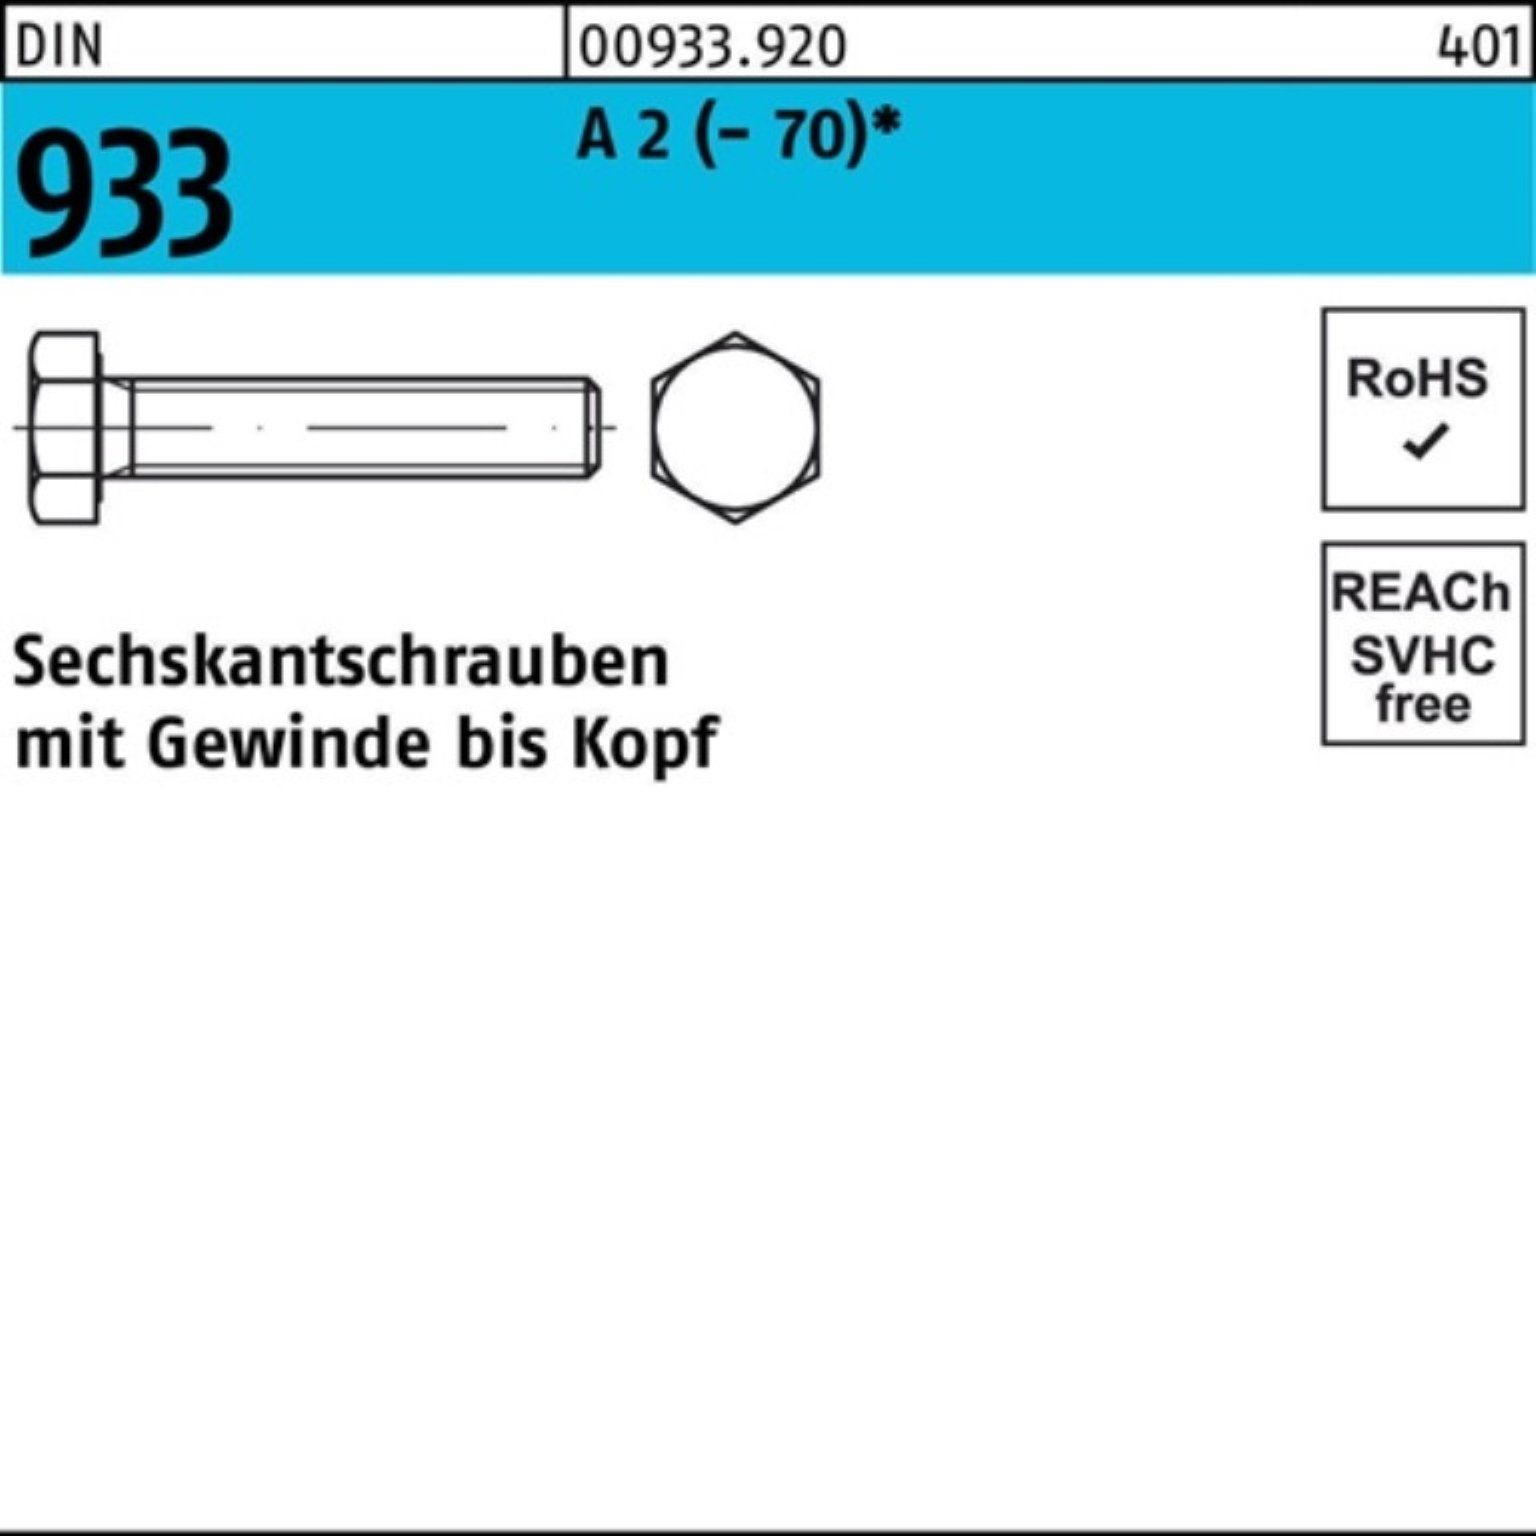 Sechskantschraube Stück Sechskantschraube A Pack 2 (70) 100er 25 VG 933 DIN D 100 M5x Reyher